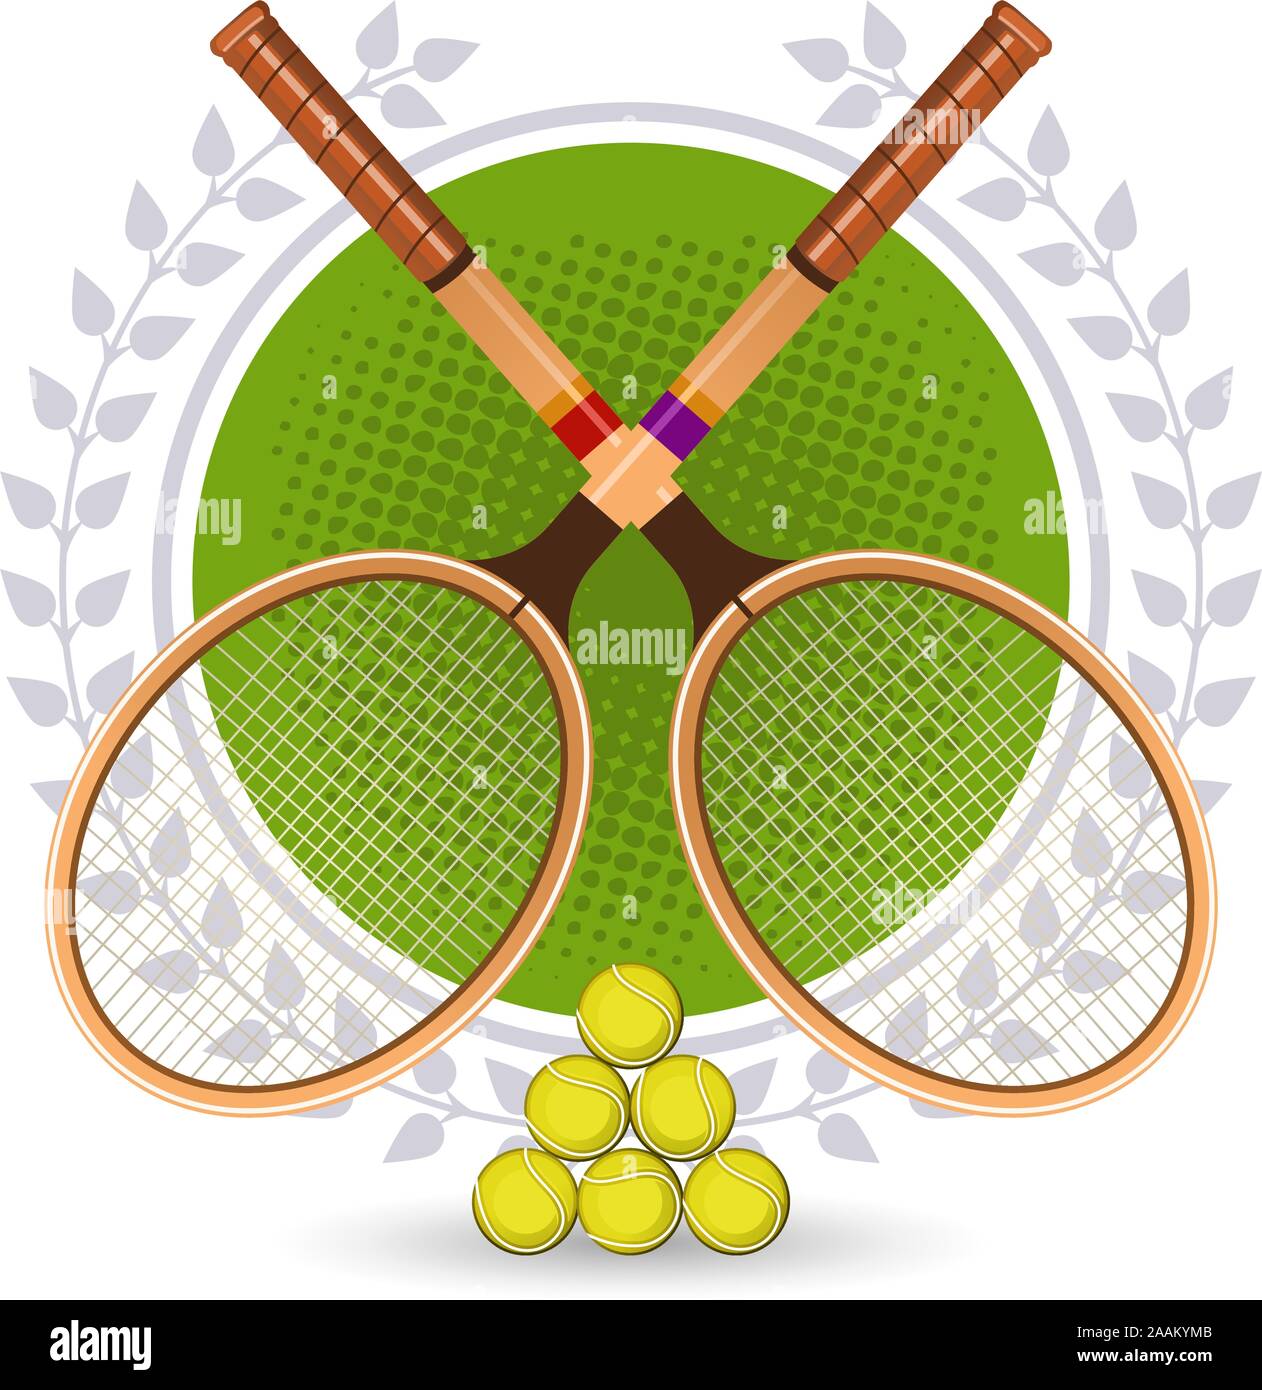 Retrò Tennis Set Emblema con racchette e corona di alloro illustrazione vettoriale. Illustrazione Vettoriale